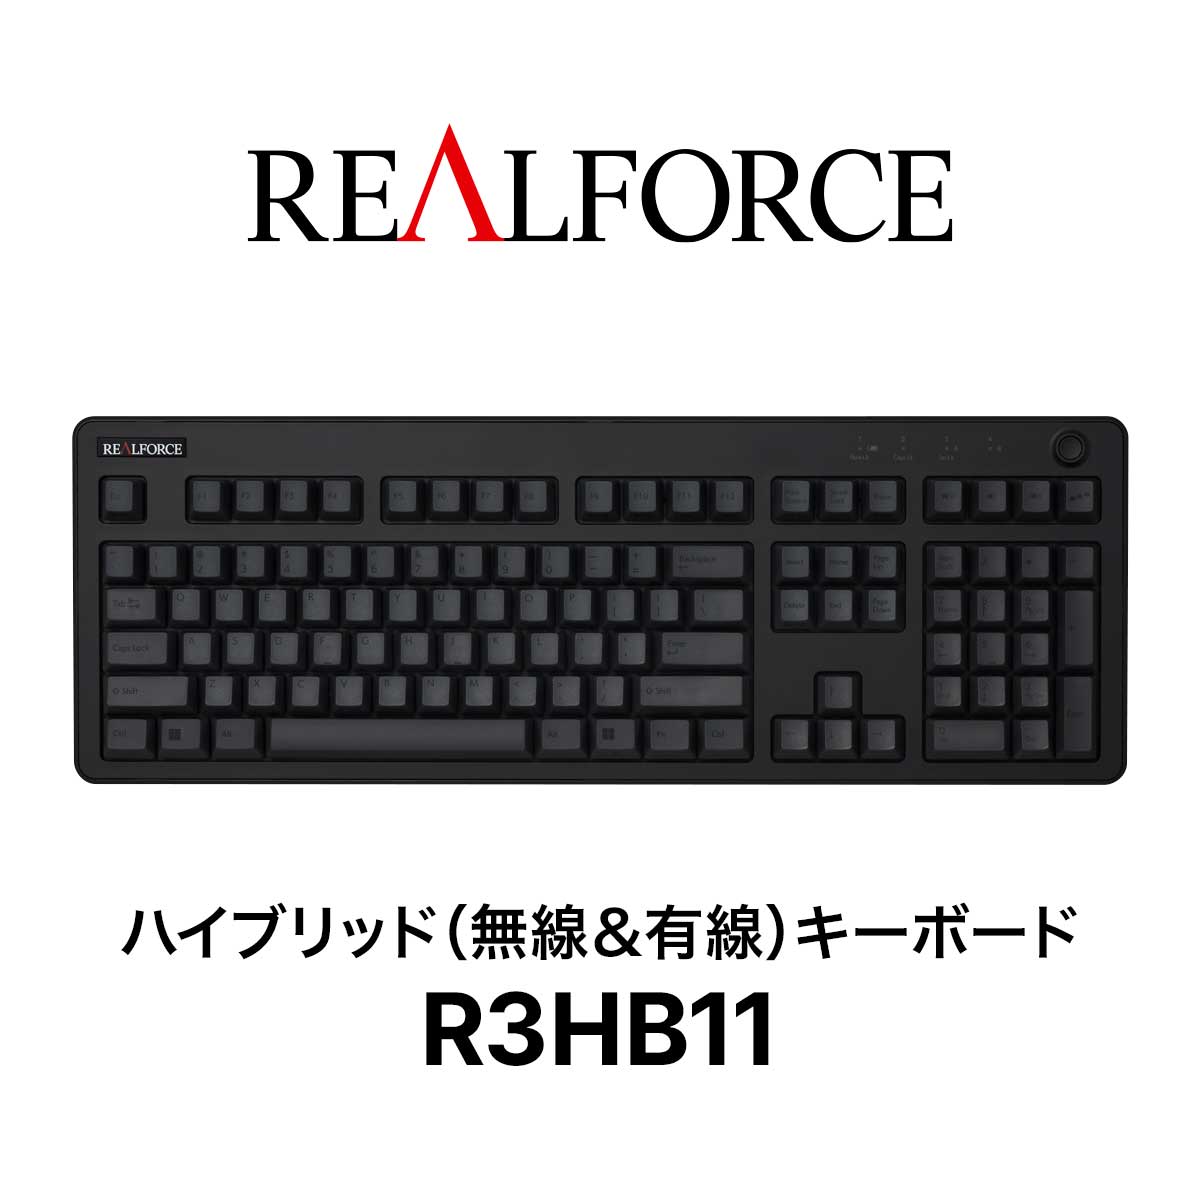 REALFORCE R3 キーボード R3HB11 ワイヤレス Bluetooth USB 東プレ ハイブリッドモデル フルキーボード 静音 ブラック  ダークグレー 英語配列 【史上最も激安】